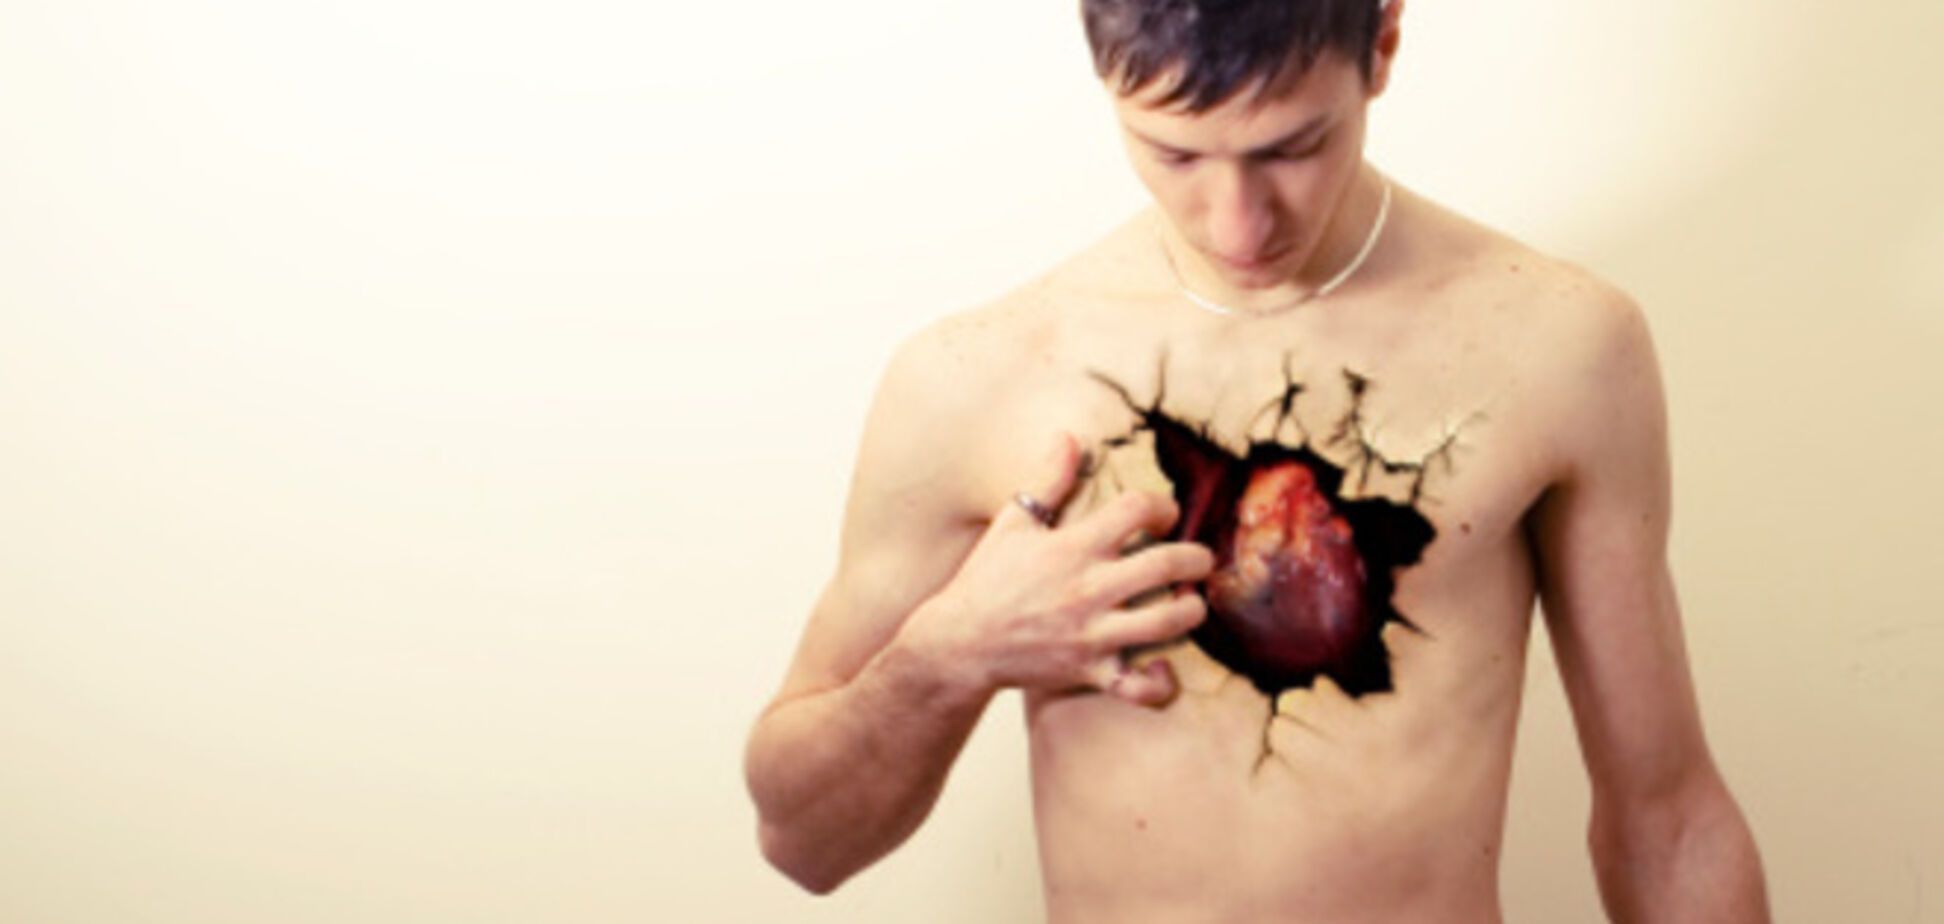 10 действий, которые помогут угробить ваше сердце